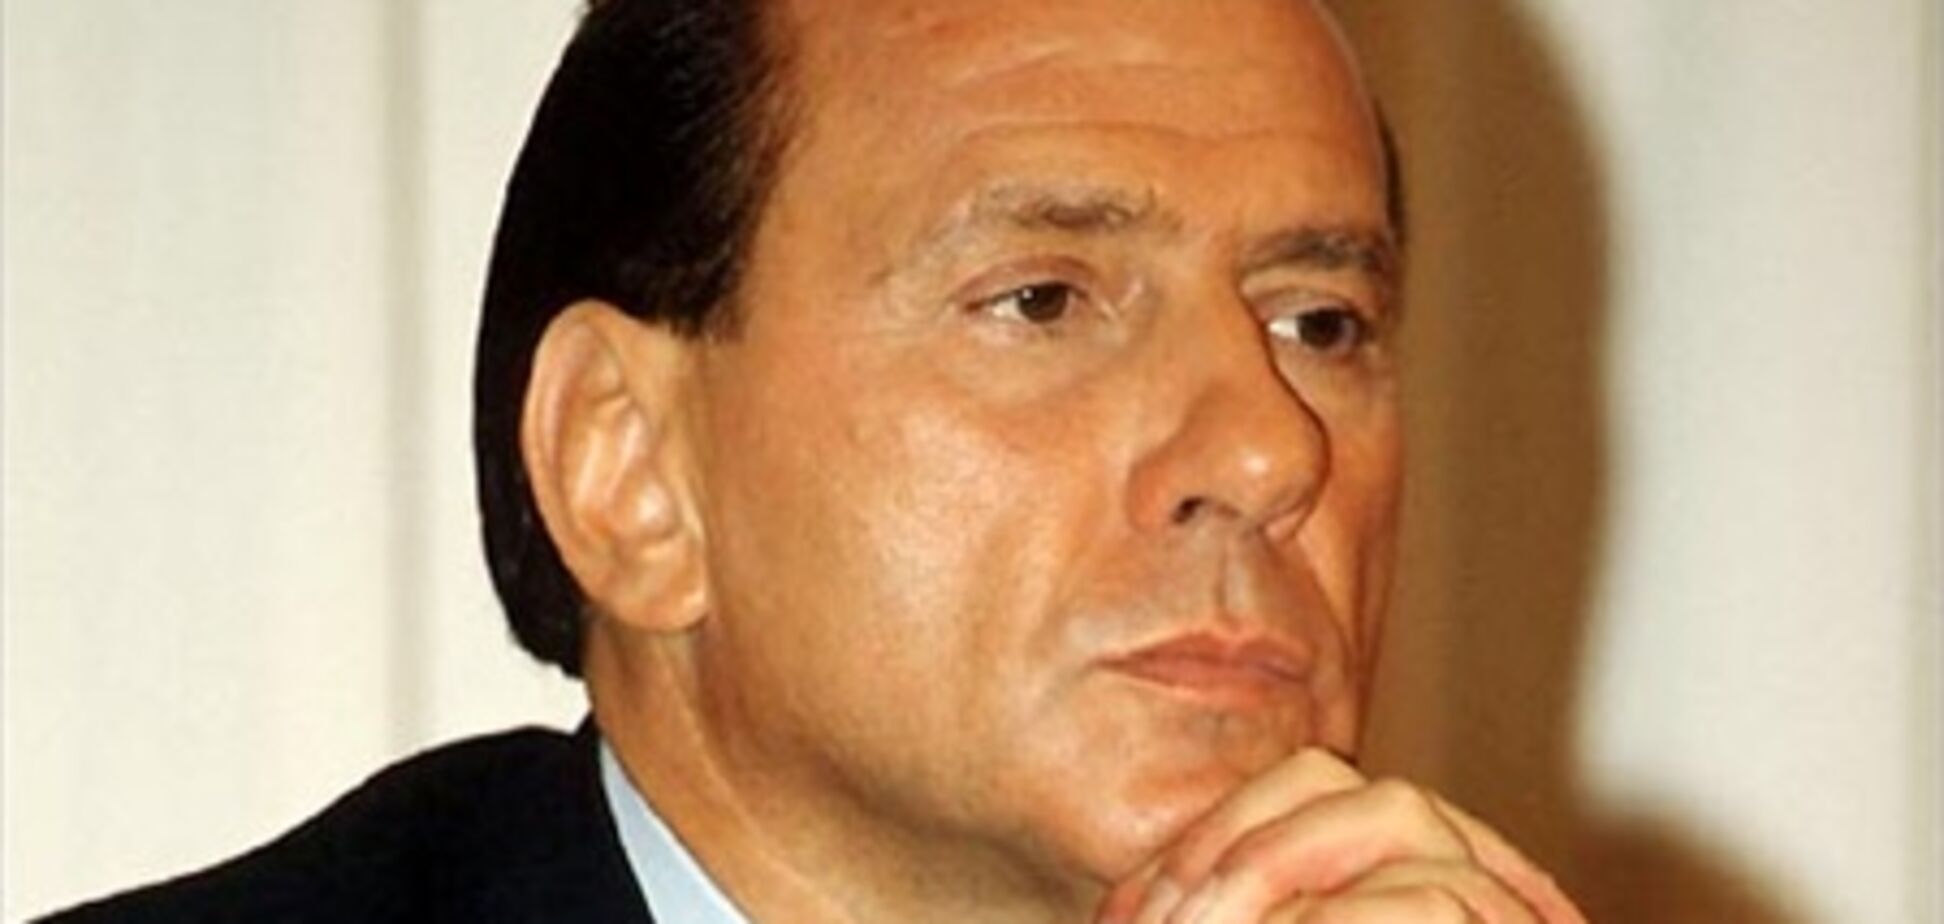 Суд Мілана призначив перевірку стану здоров'я Берлусконі